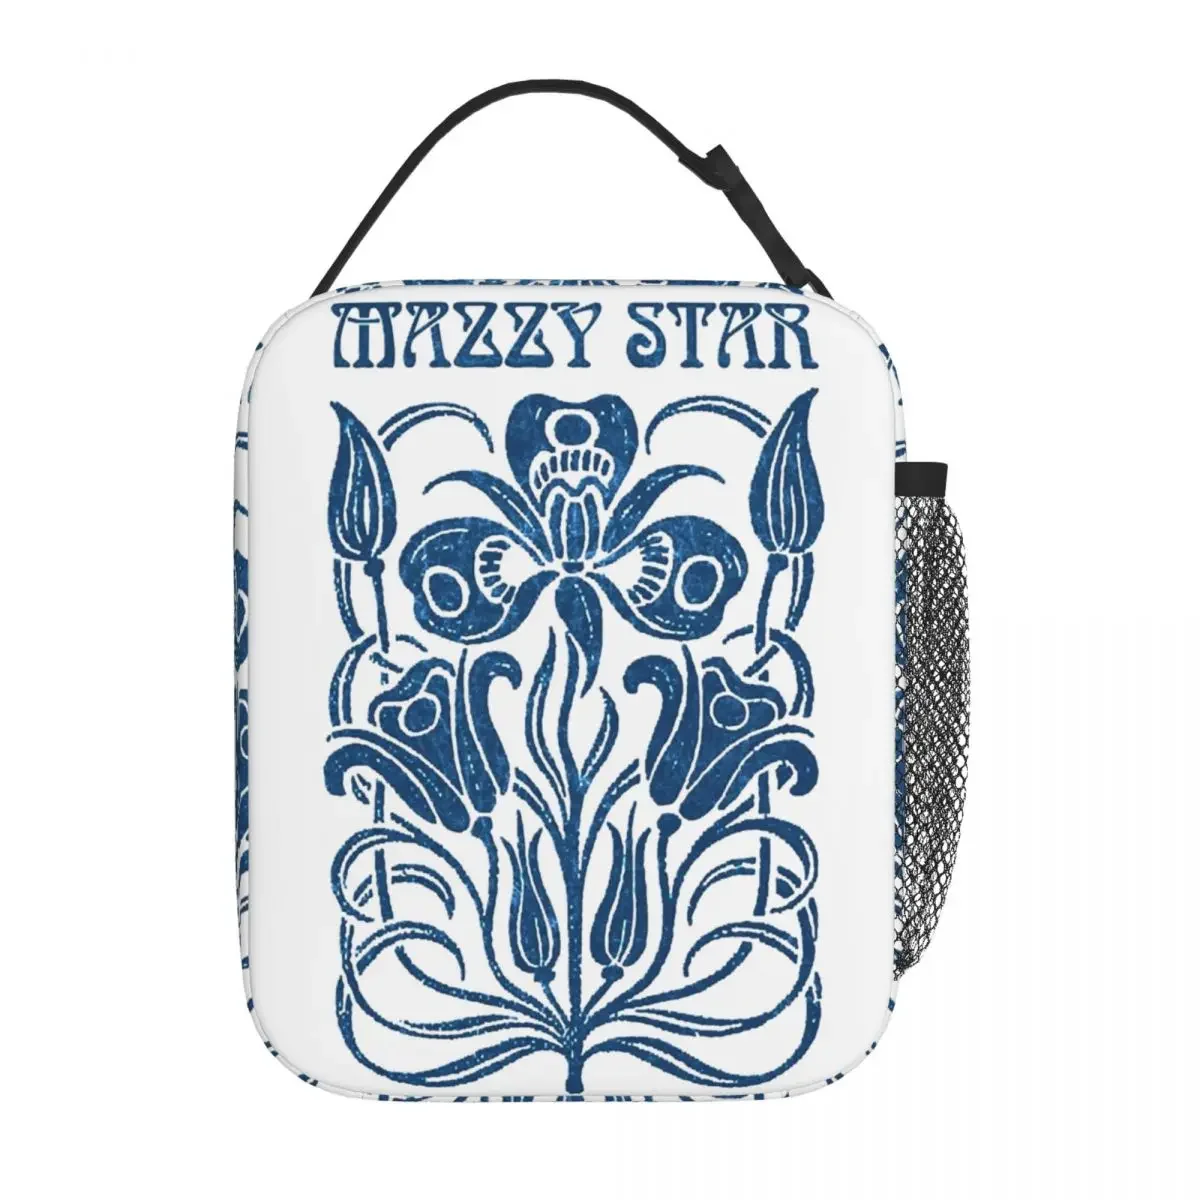 Фотография Mazzy Star Изолированная сумка для ланча Термоконтейнер для ланча Музыкальная группа Портативная сумка-ланч-бокс Мужчины Женщины Путешествия в колледж